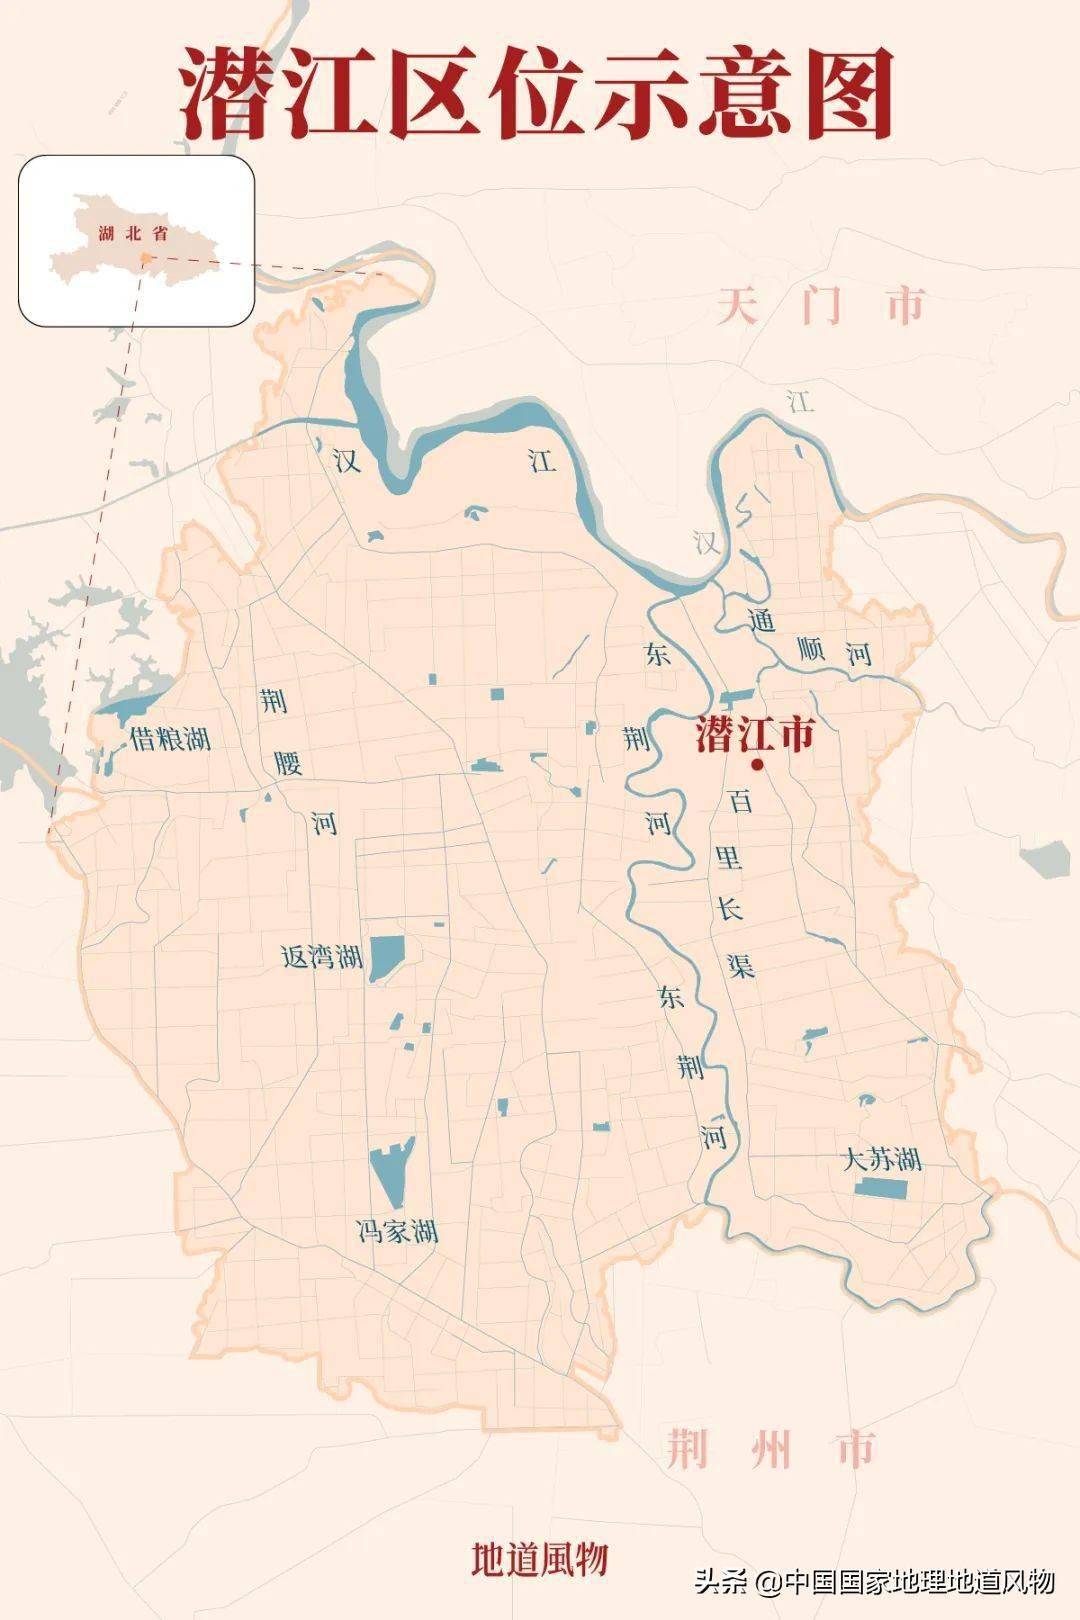 潜江市地理位置图片